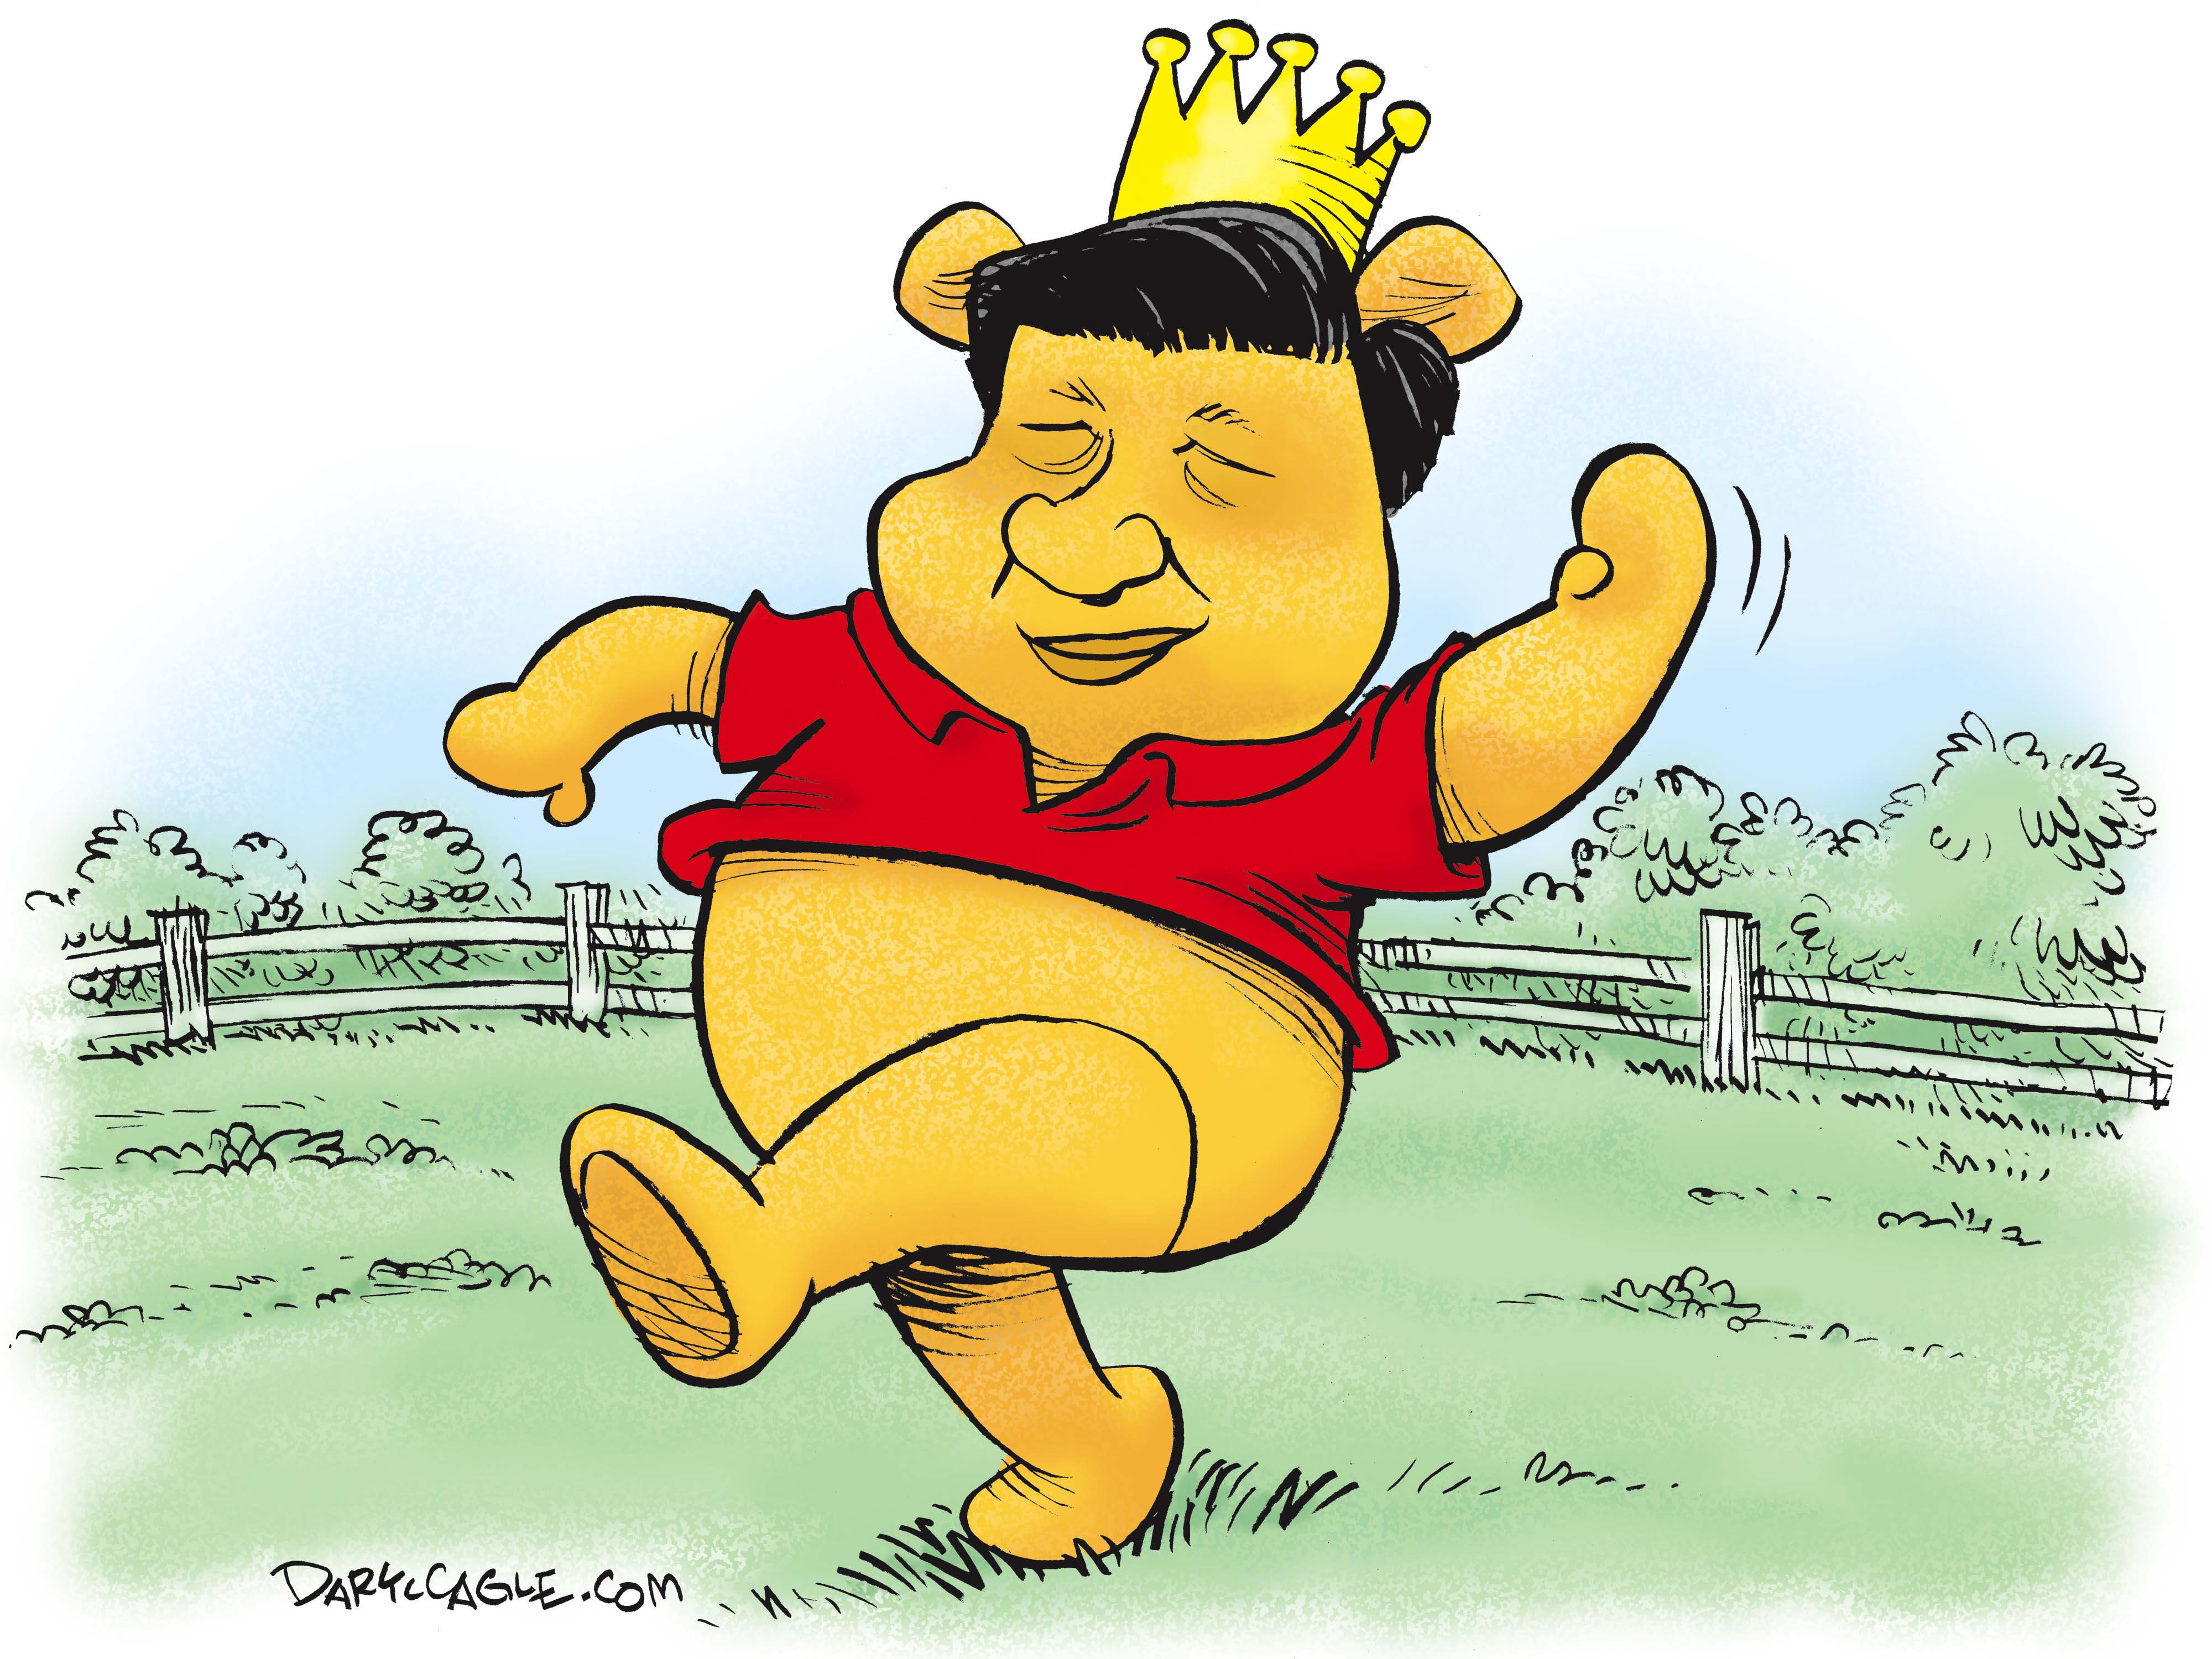 Jinping pooh xi Xi Jinping